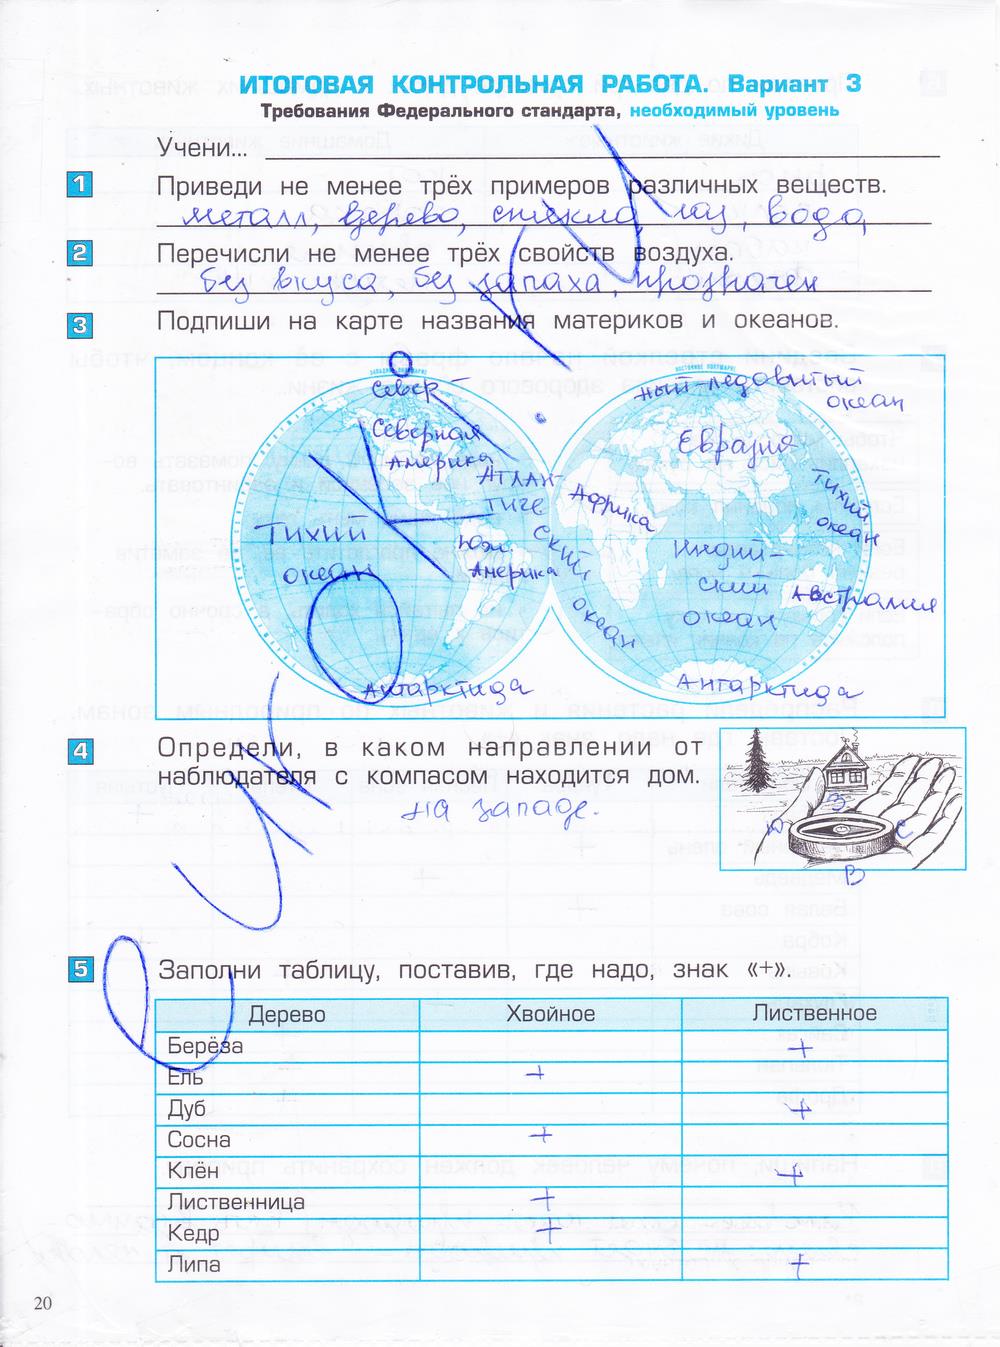 гдз 4 класс проверочные и контрольные работы часть 1 страница 20 окружающий мир Вахрушев, Бурский, Родыгина